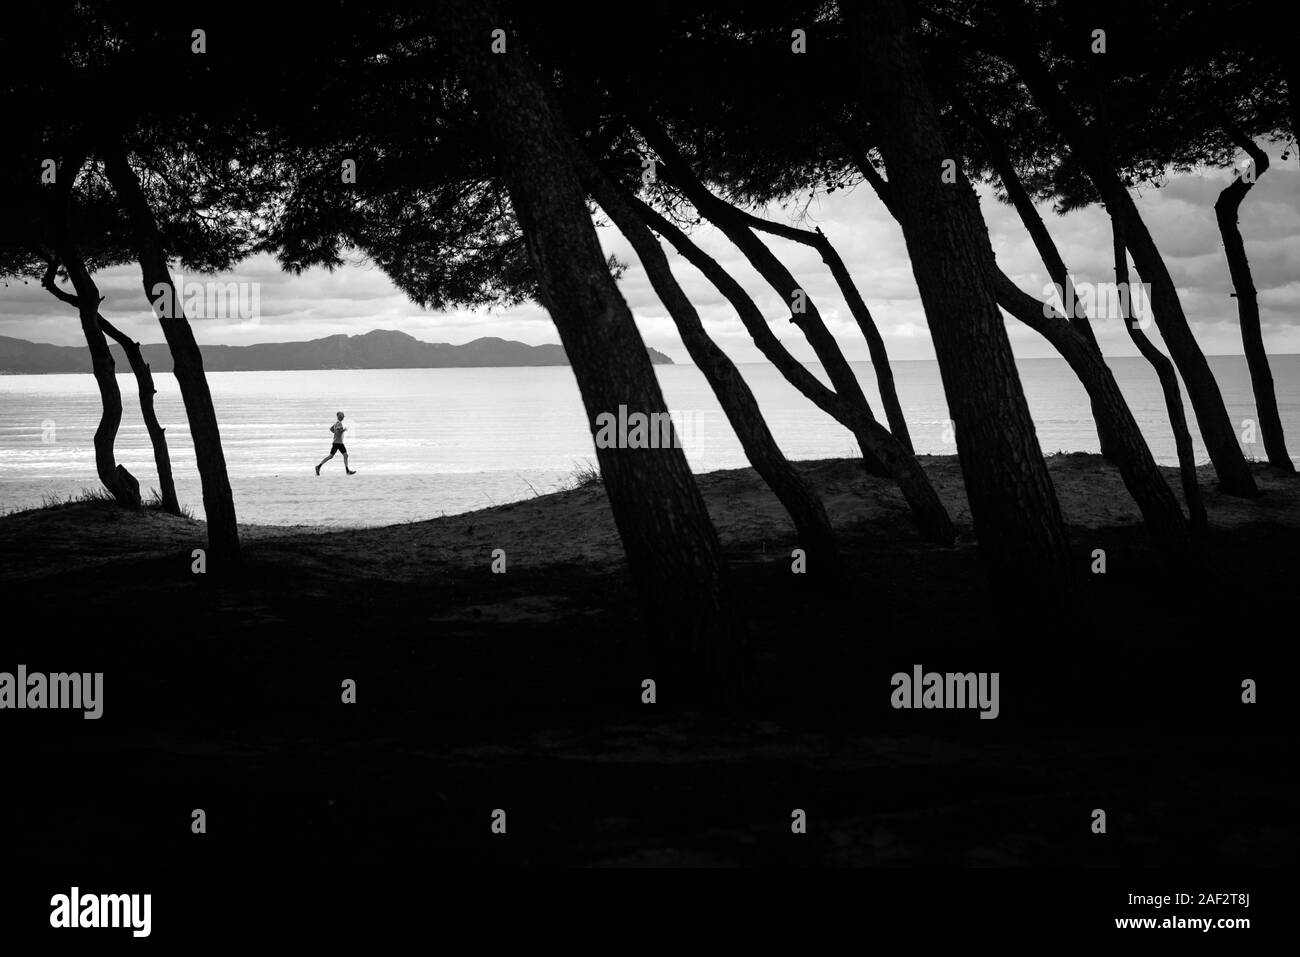 Silueta de runner corriendo en la playa. Silueta de árboles delante de la foto. Editar espacio Foto de stock